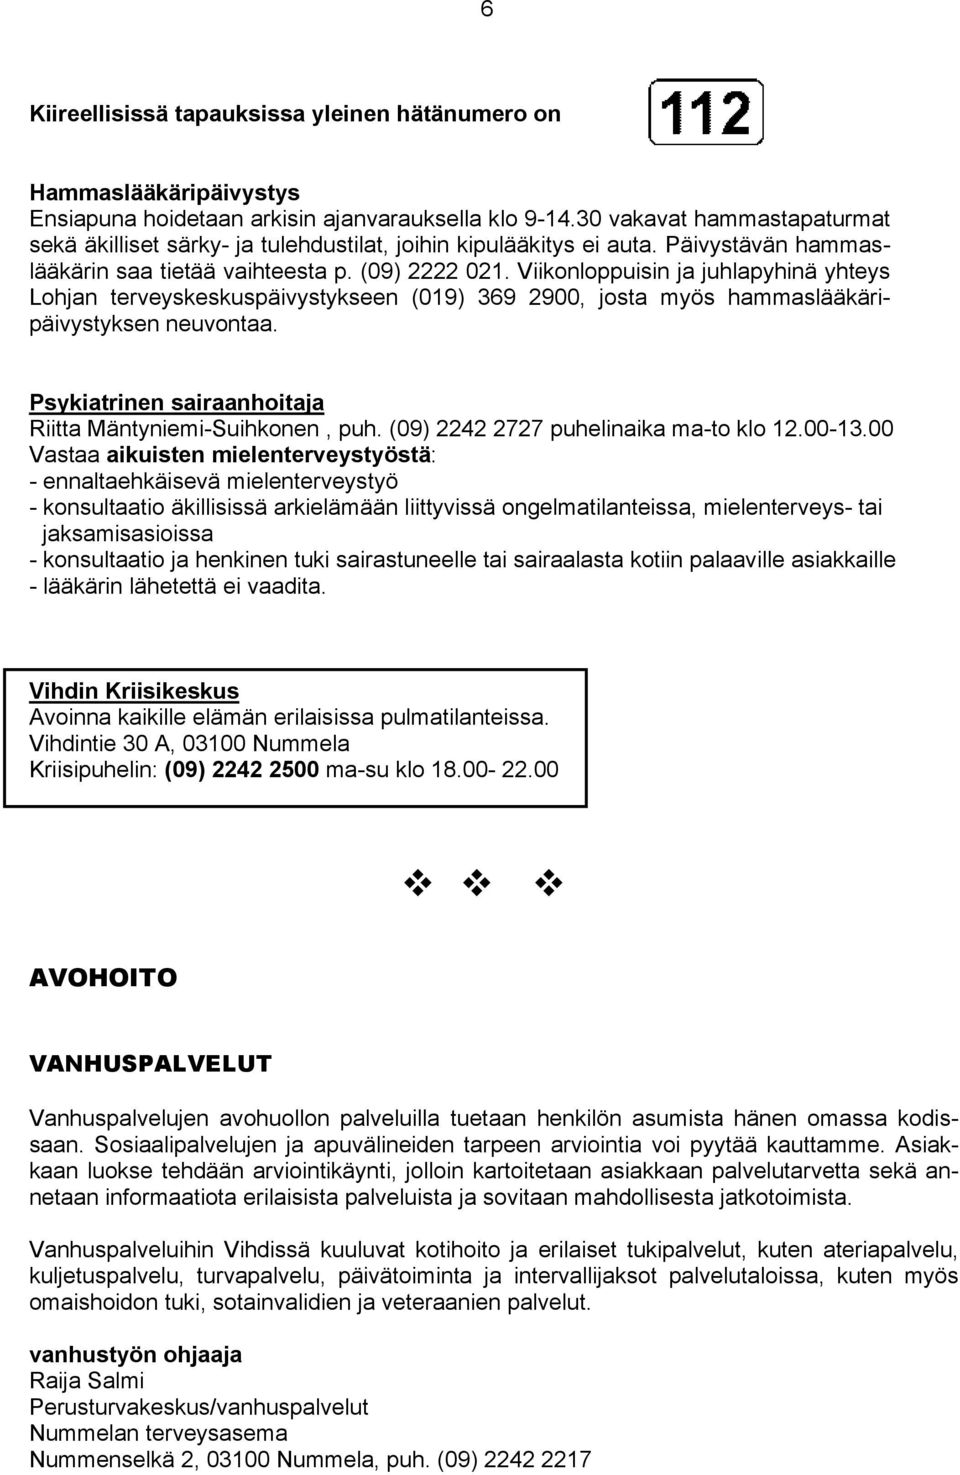 Viikonloppuisin ja juhlapyhinä yhteys Lohjan terveyskeskuspäivystykseen (019) 369 2900, josta myös hammaslääkäripäivystyksen neuvontaa. Psykiatrinen sairaanhoitaja Riitta Mäntyniemi-Suihkonen, puh.